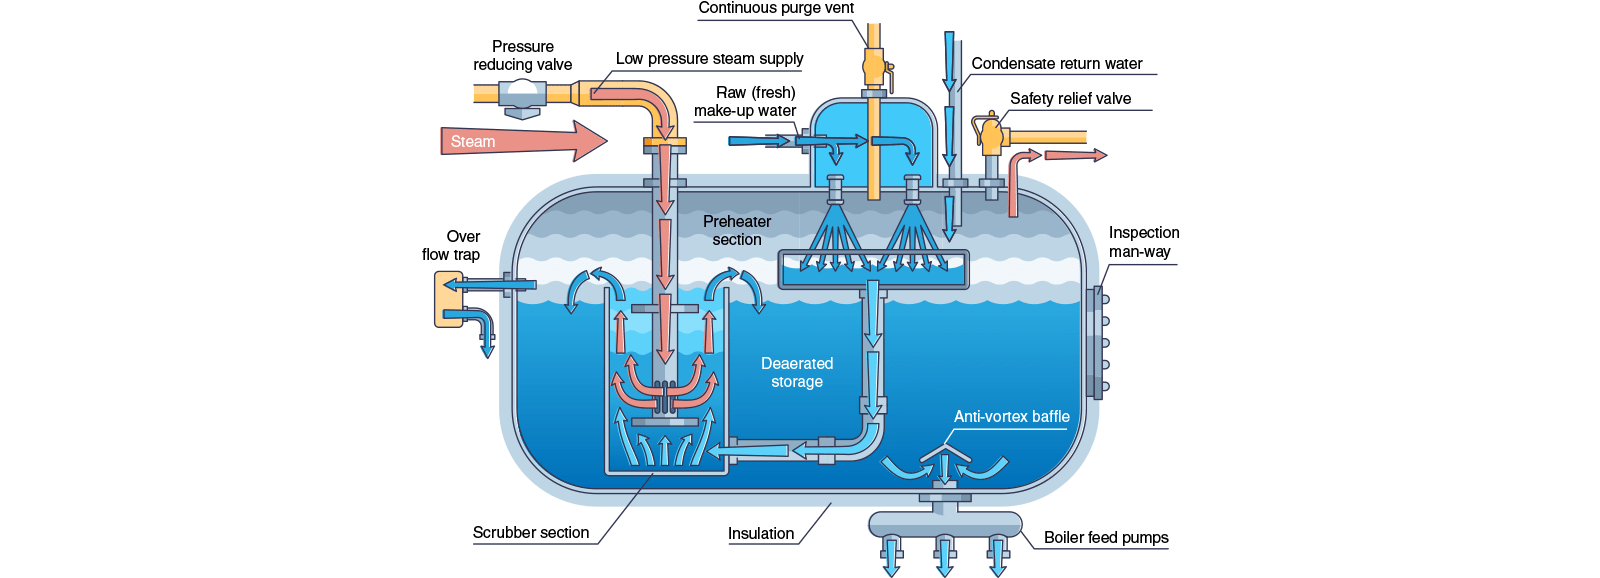 Funcionamiento de una caldera de vapor industrial - Diagrama